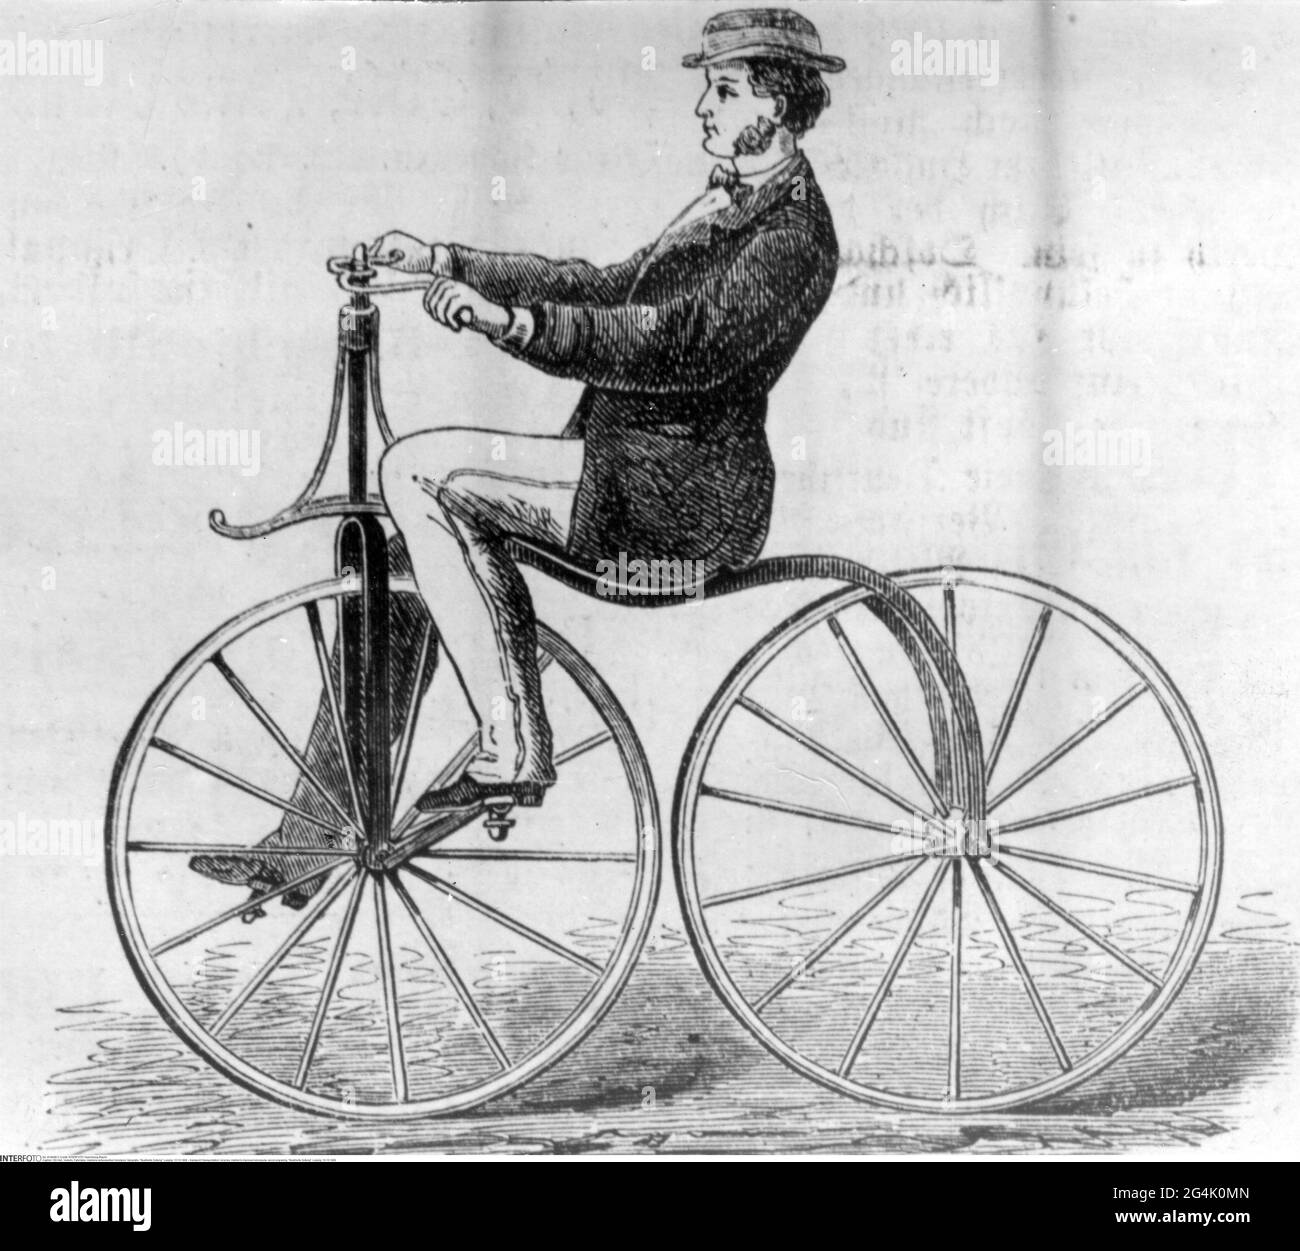 Transporte / transporte, bicicletas, velocipede mejorado de Hanton, grabado de madera, 'Illustrierte Zeitung', LOS COPYRIGHT DEL ARTISTA NO SE HAN DE BORRAR Foto de stock